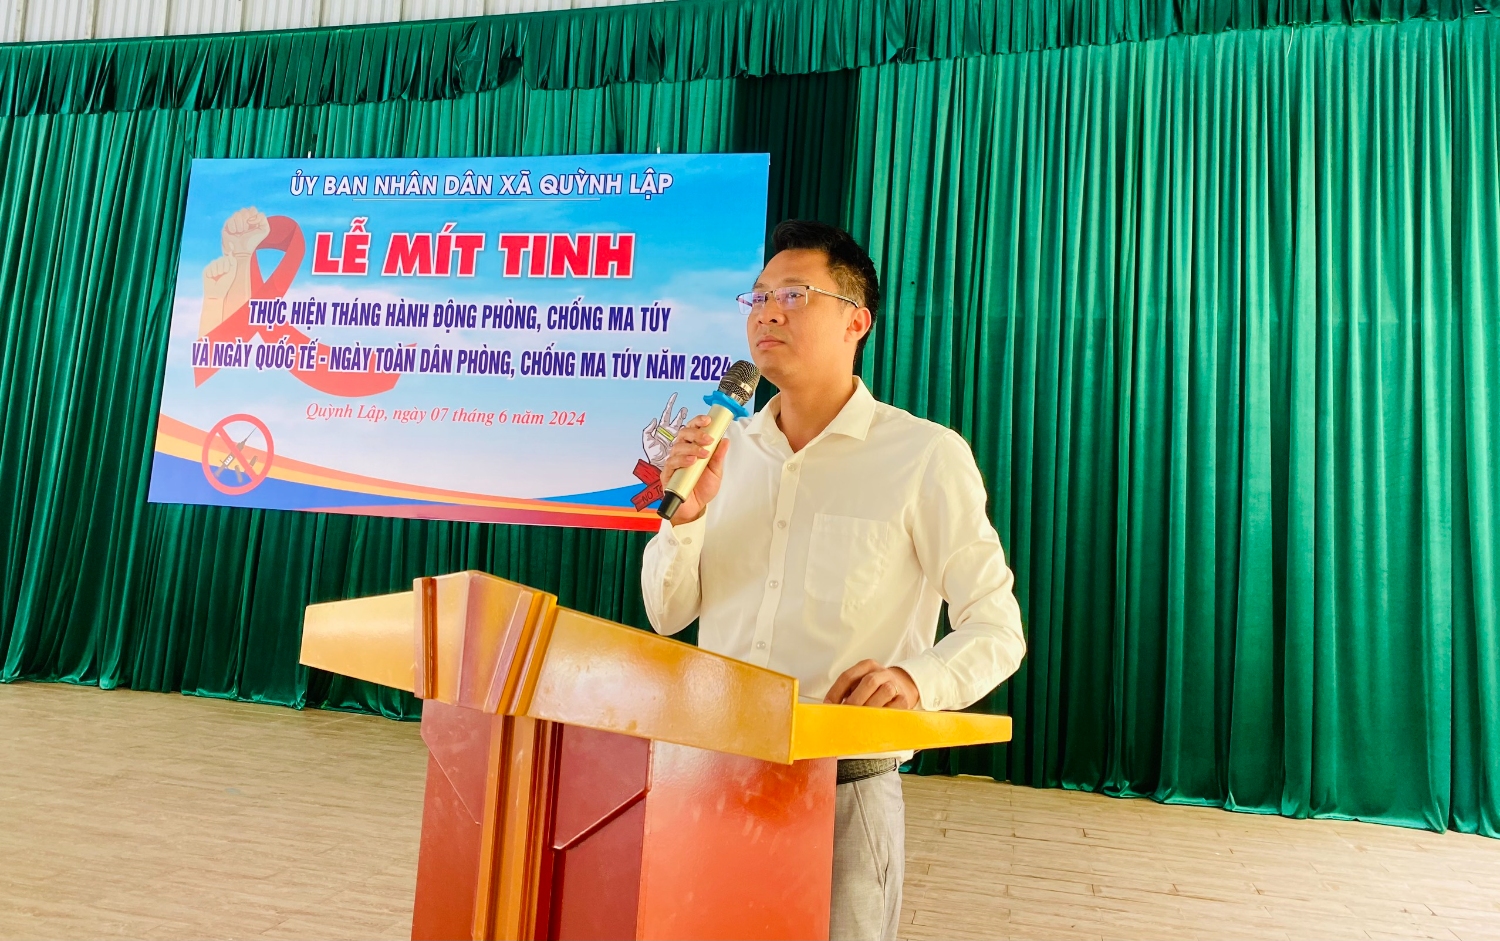 Đồng chí Hồ Cảnh Thuận, Thị ủy viên, Bí thư Đảng ủy, phát biểu chỉ đạo tại Lễ mít tinh